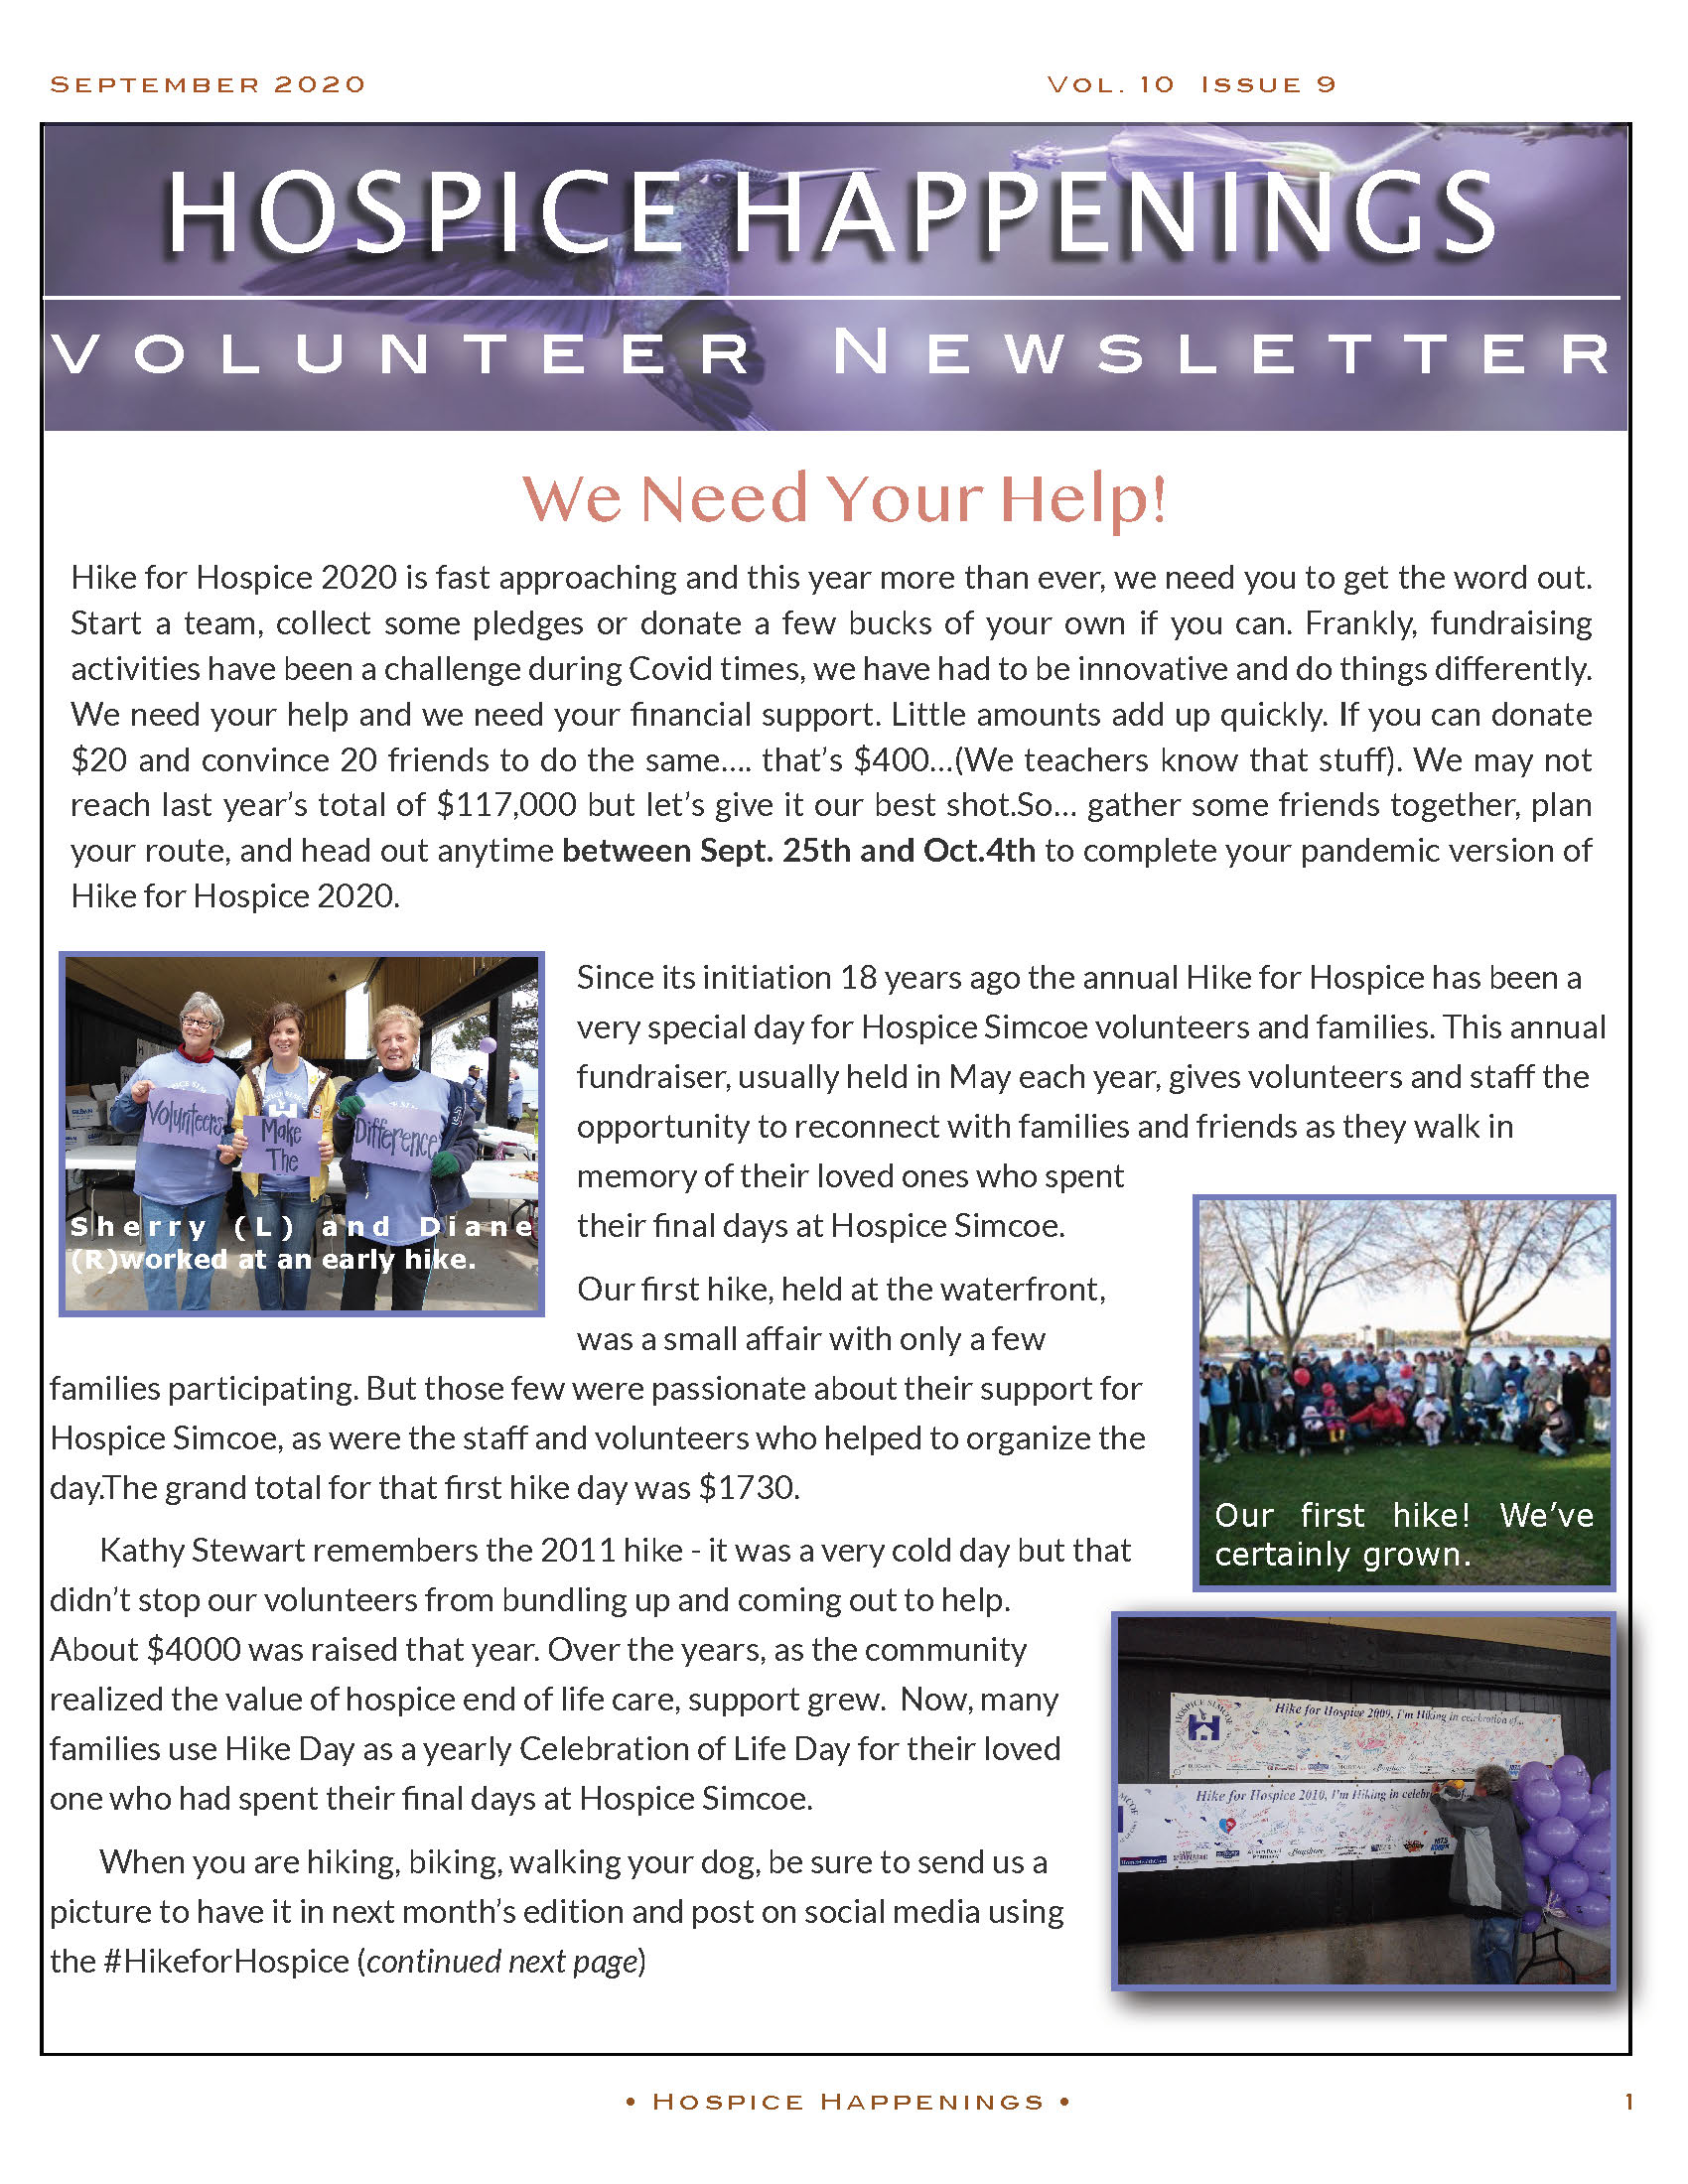 Volunteer newsletter